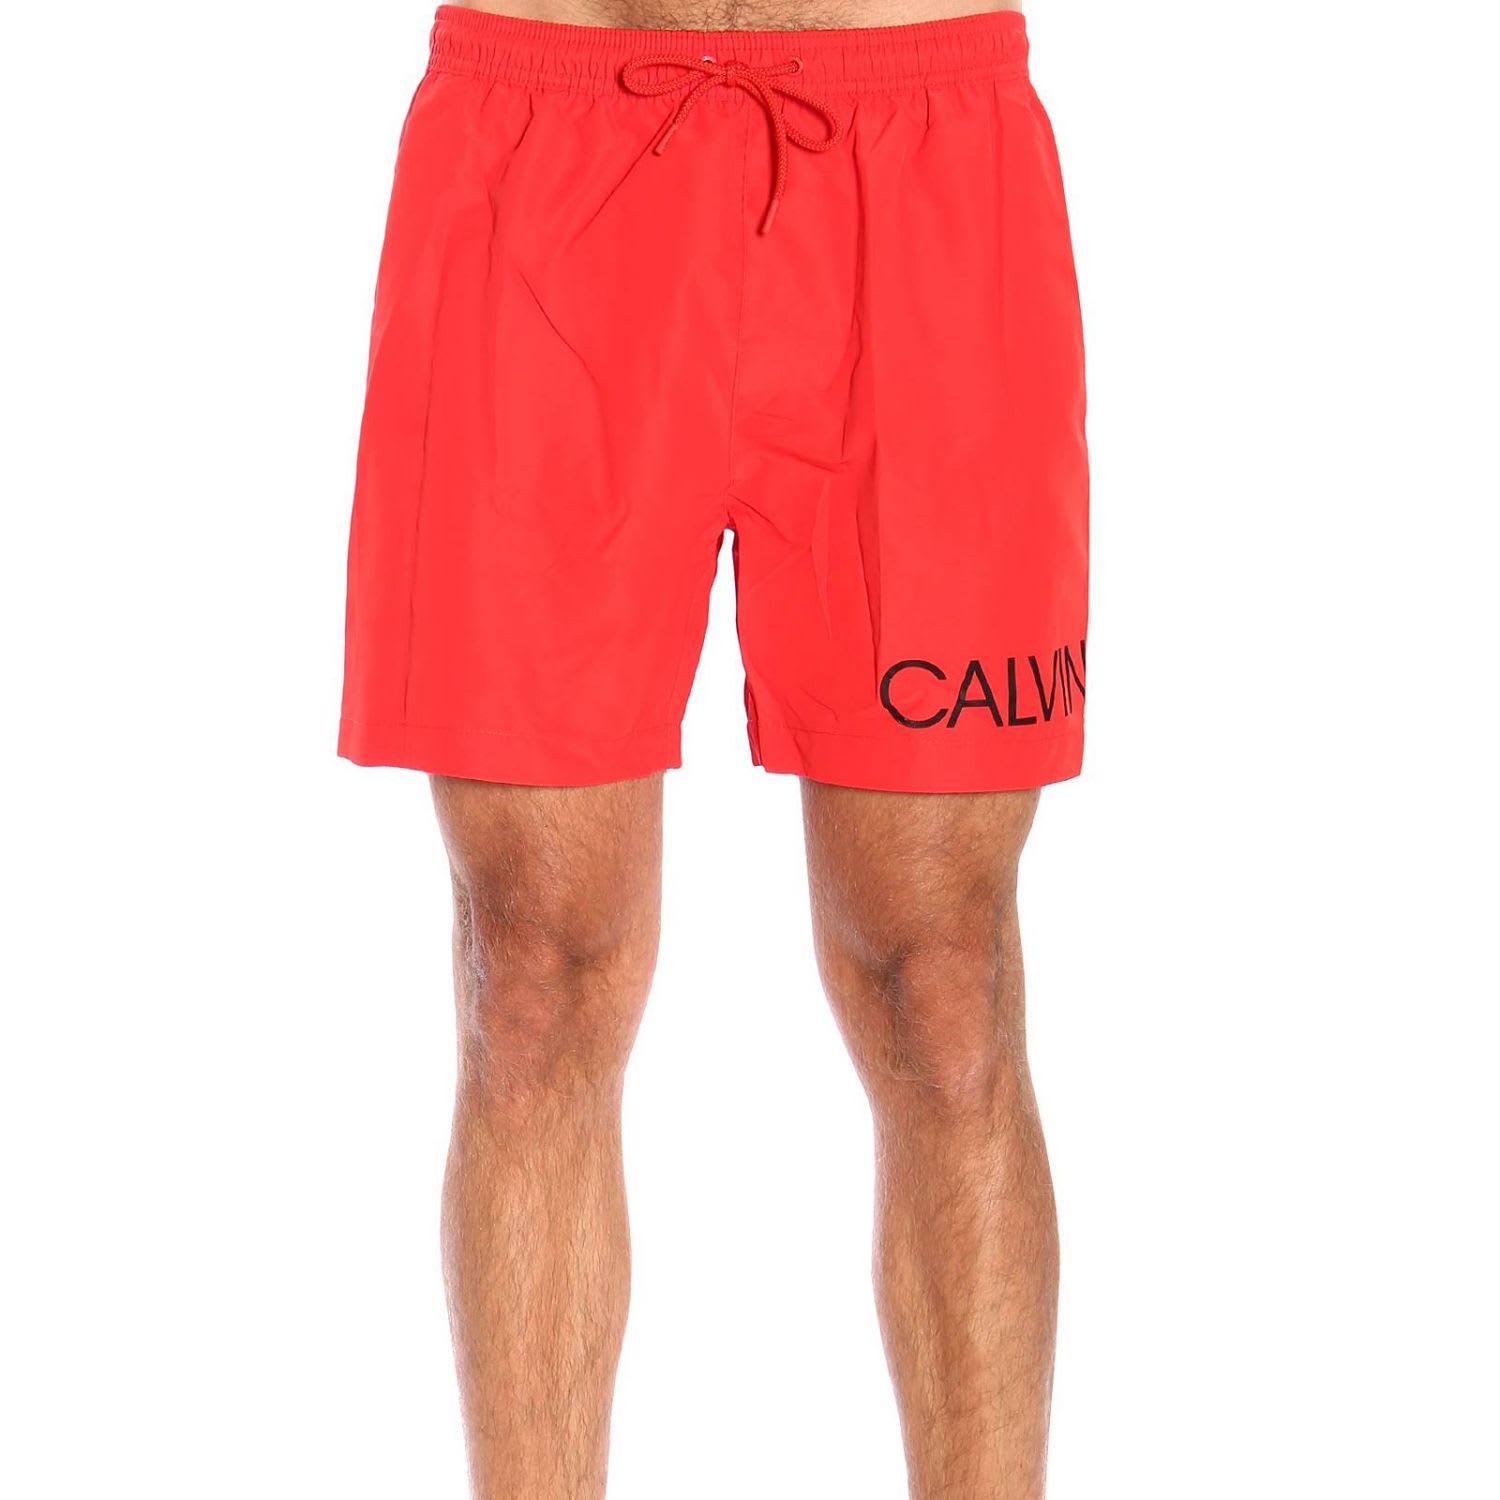 calvin klein men's swimwear